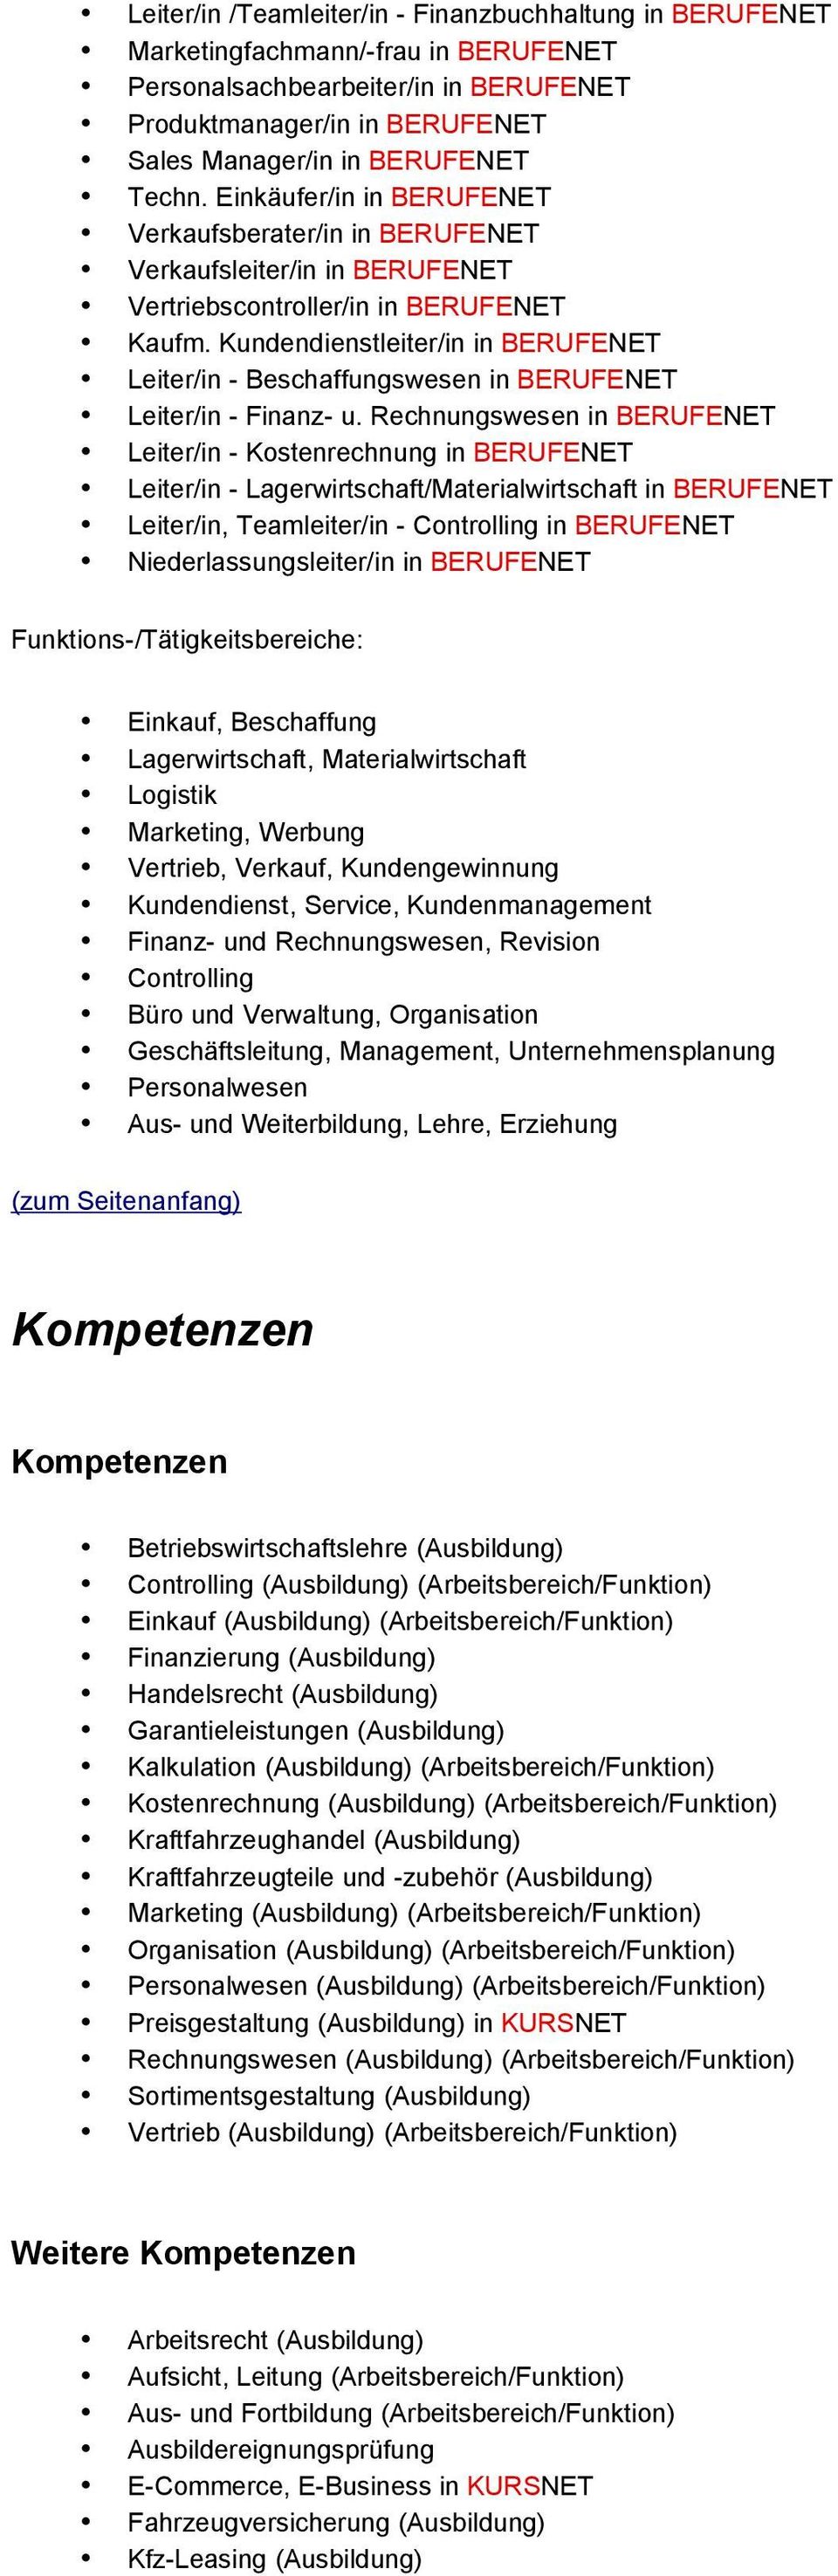 Kundendienstleiter/in in BERUFENET Leiter/in - Beschaffungswesen in BERUFENET Leiter/in - Finanz- u.